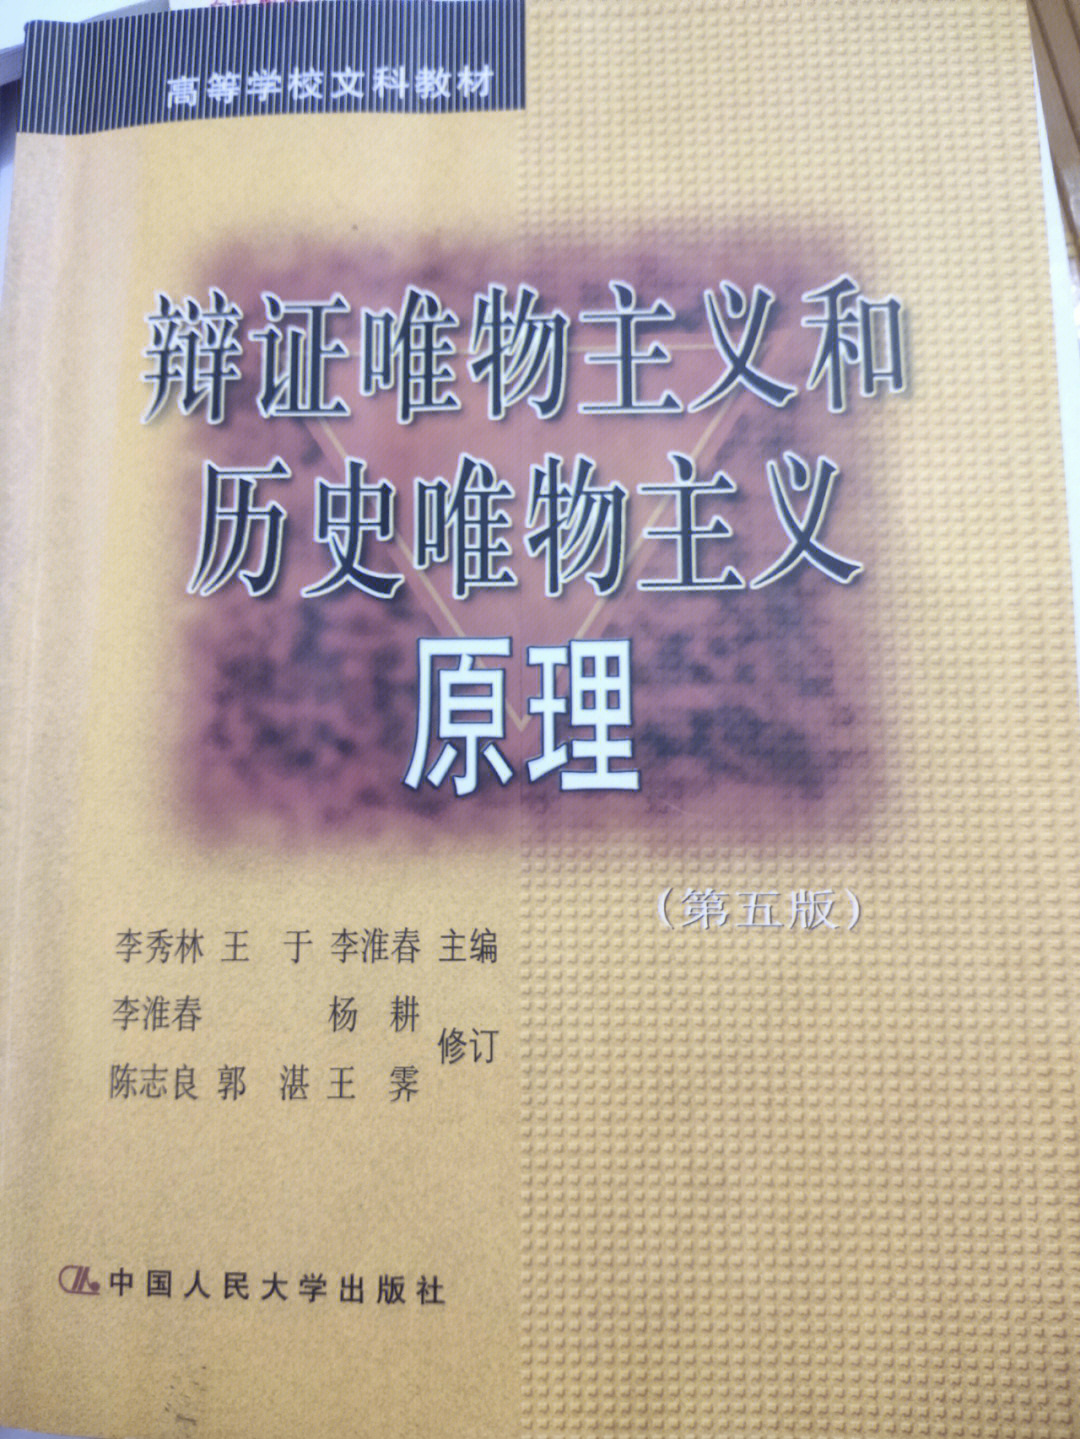 李秀林辩证唯物主义和历史唯物主义原理